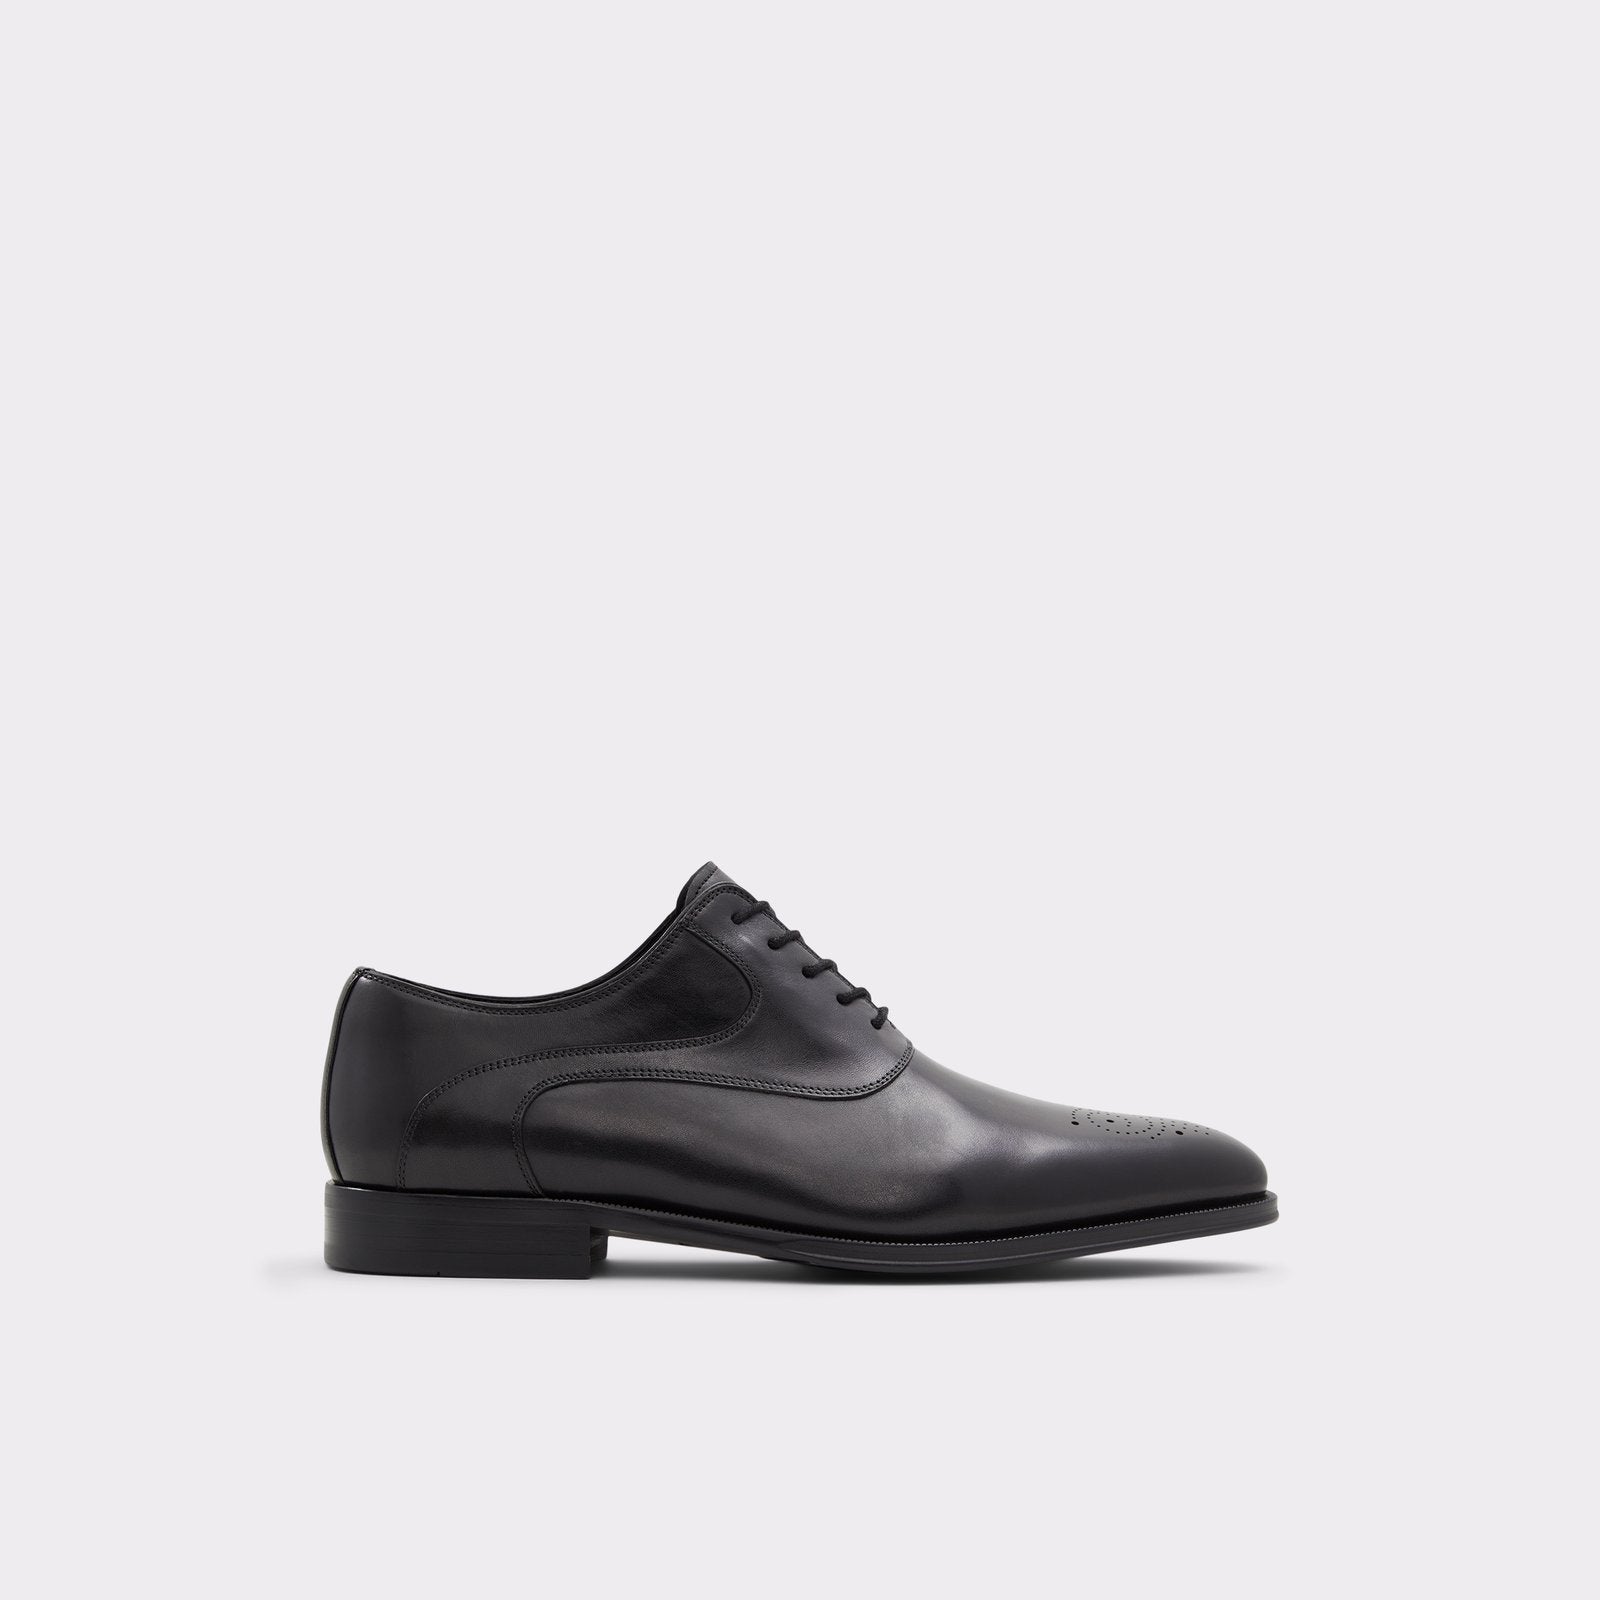 Aldo Men’s Oxford Shoes Simmons (Black)